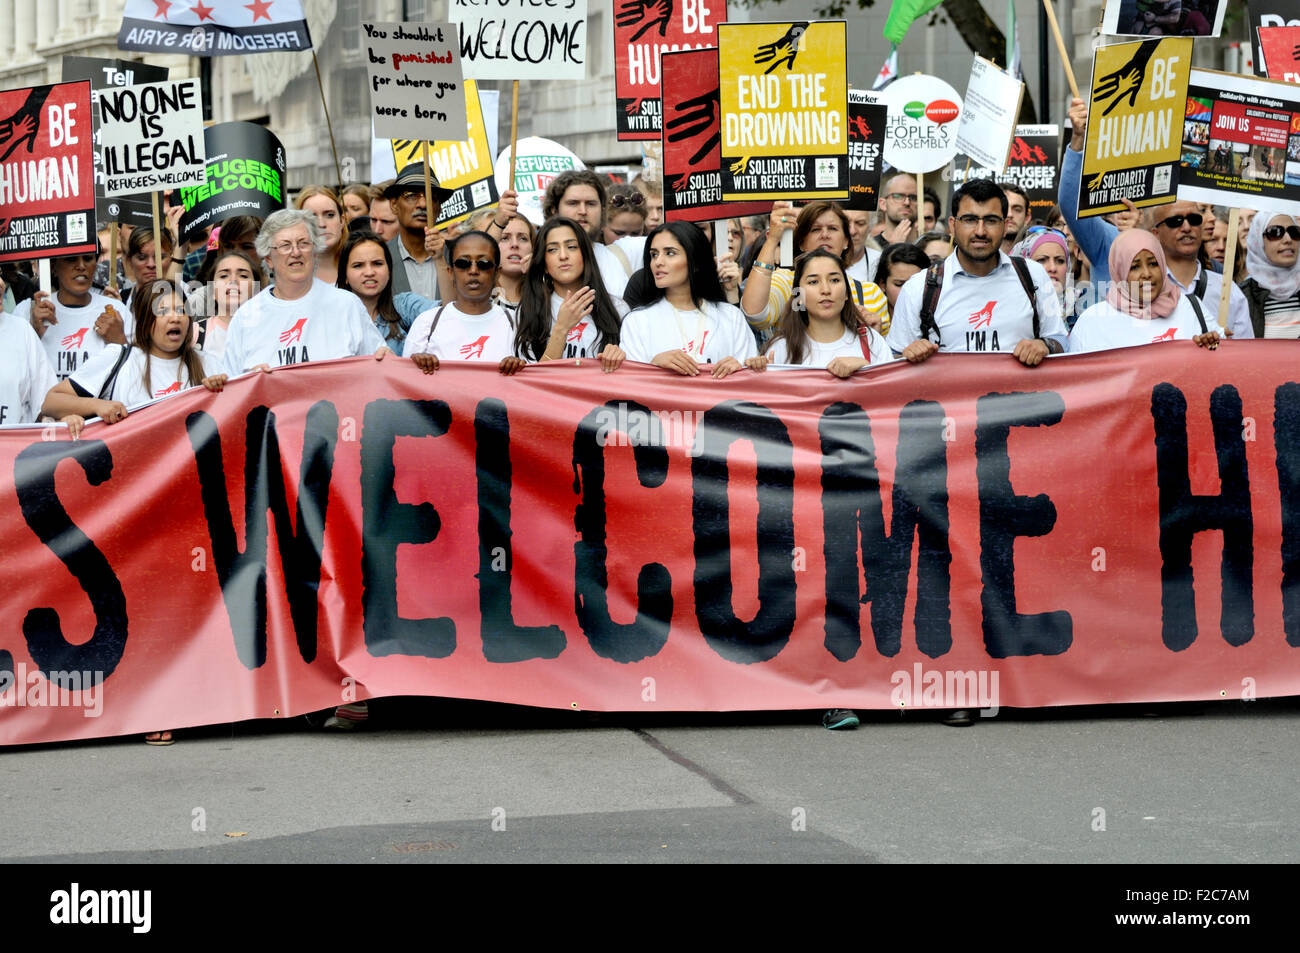 London, 12. September 2015. "Flüchtlinge willkommen hier" Rallye, marschieren von Marble Arch, Parliament Square Stockfoto